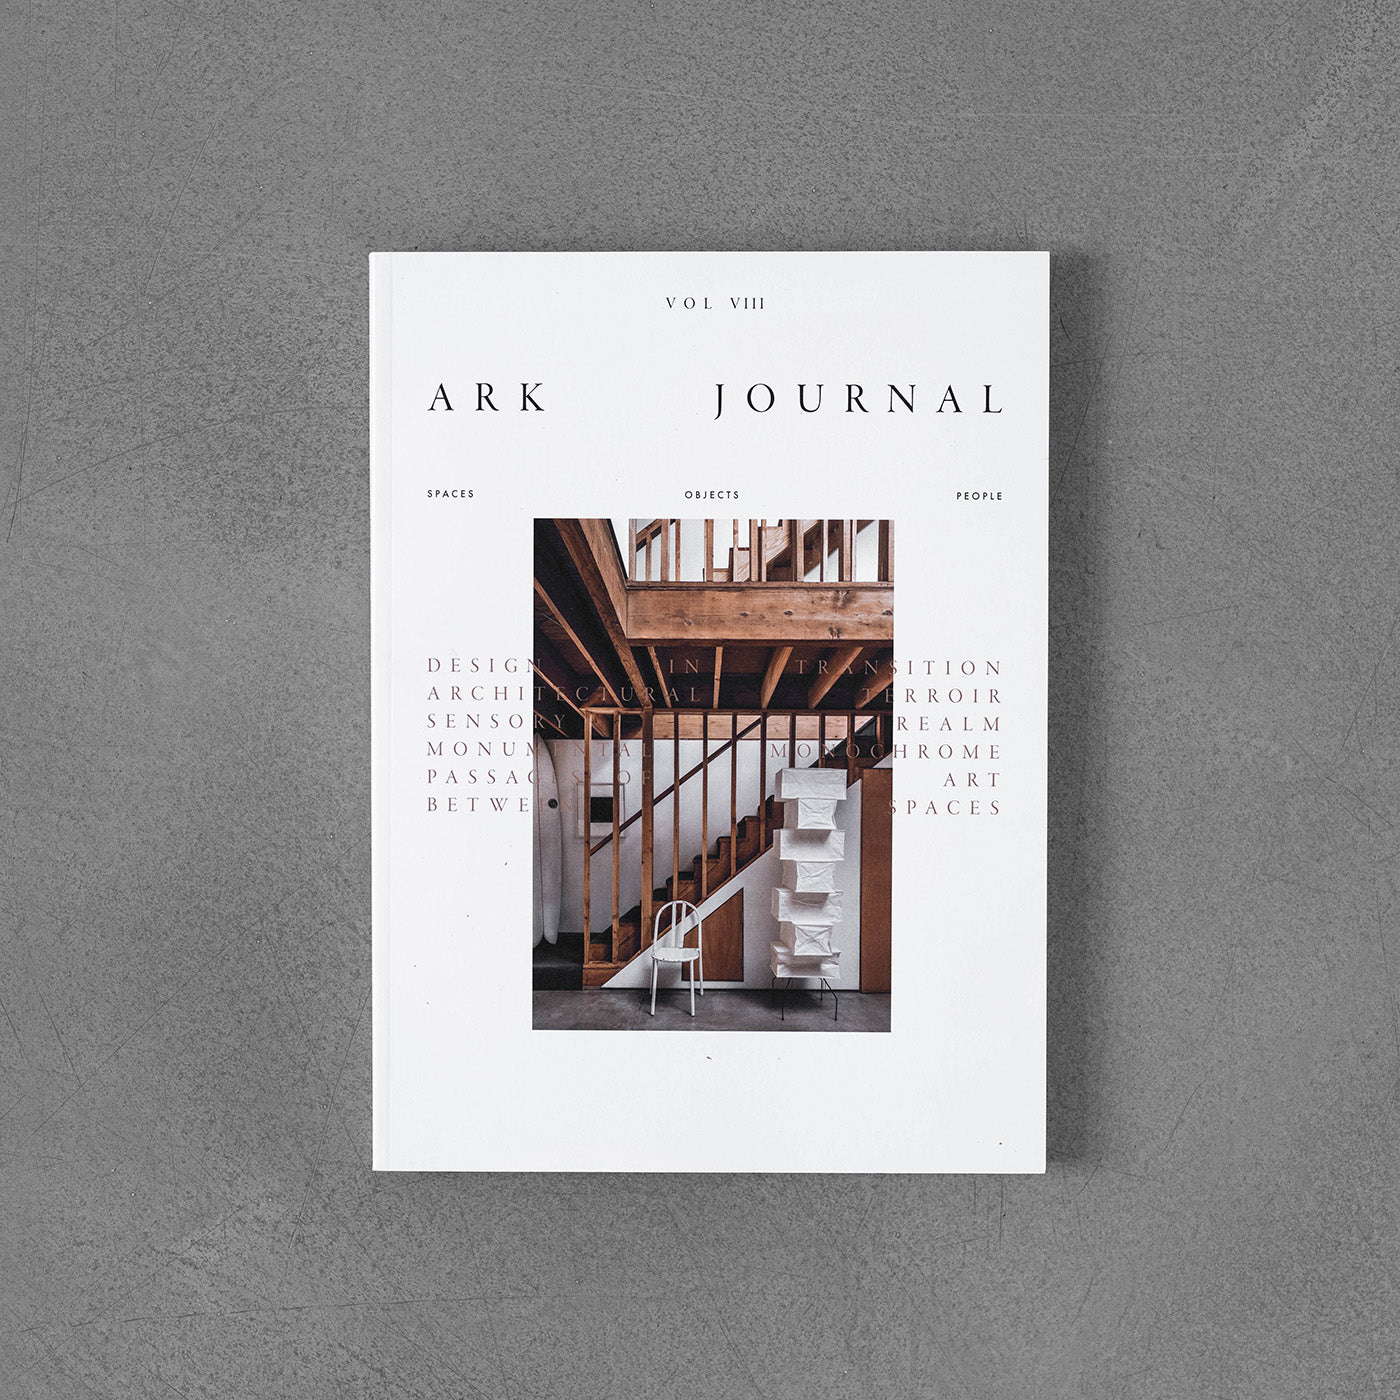 Ark Journal #08